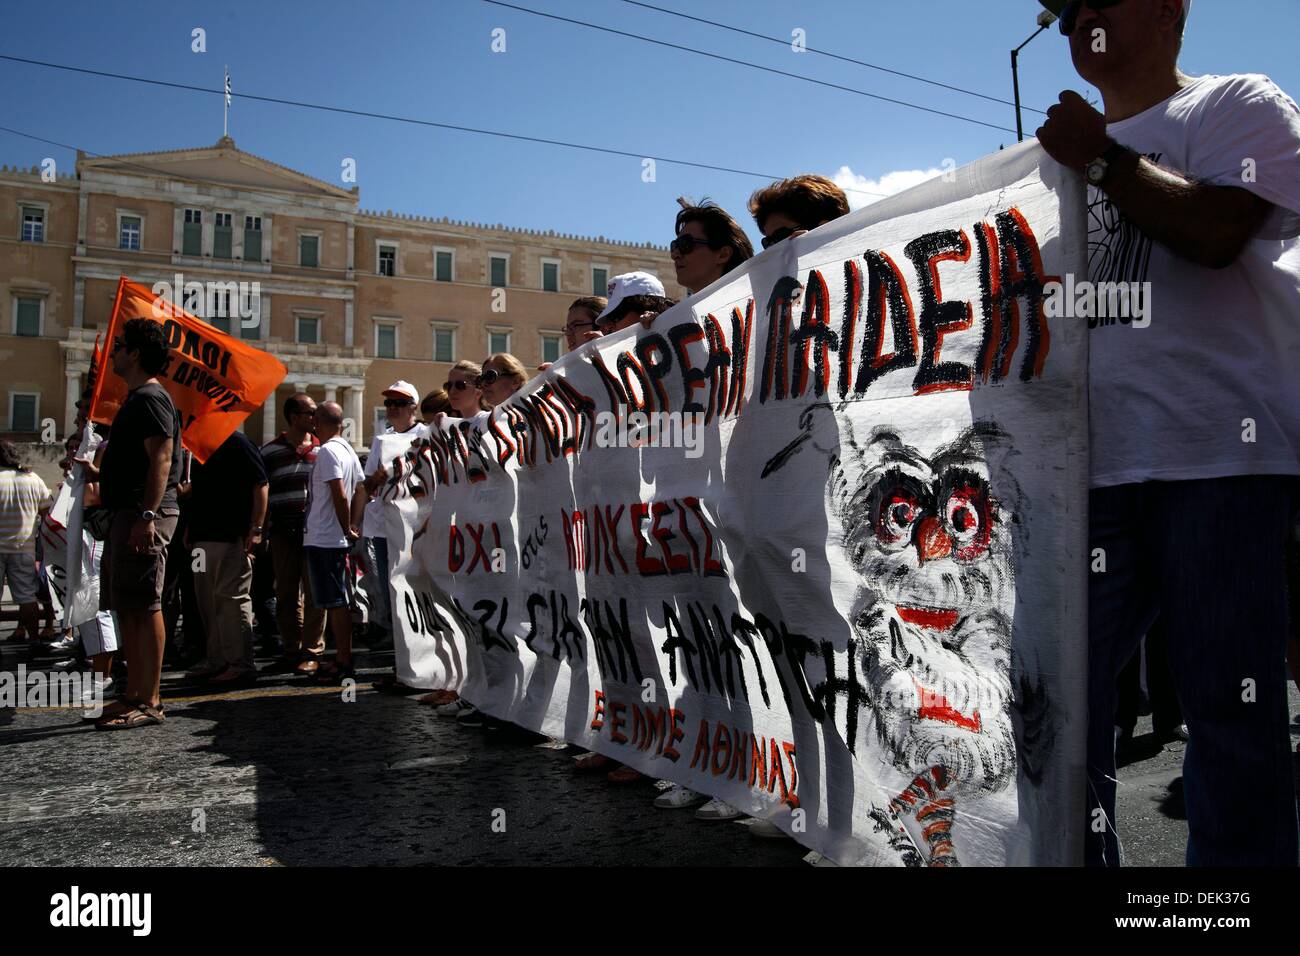 Athènes, Grèce. 18 sept., 2013. Les enseignants grecs protestent contre les licenciements devant le Parlement à Athènes. Dpa : Crédit photo alliance/Alamy Live News Banque D'Images